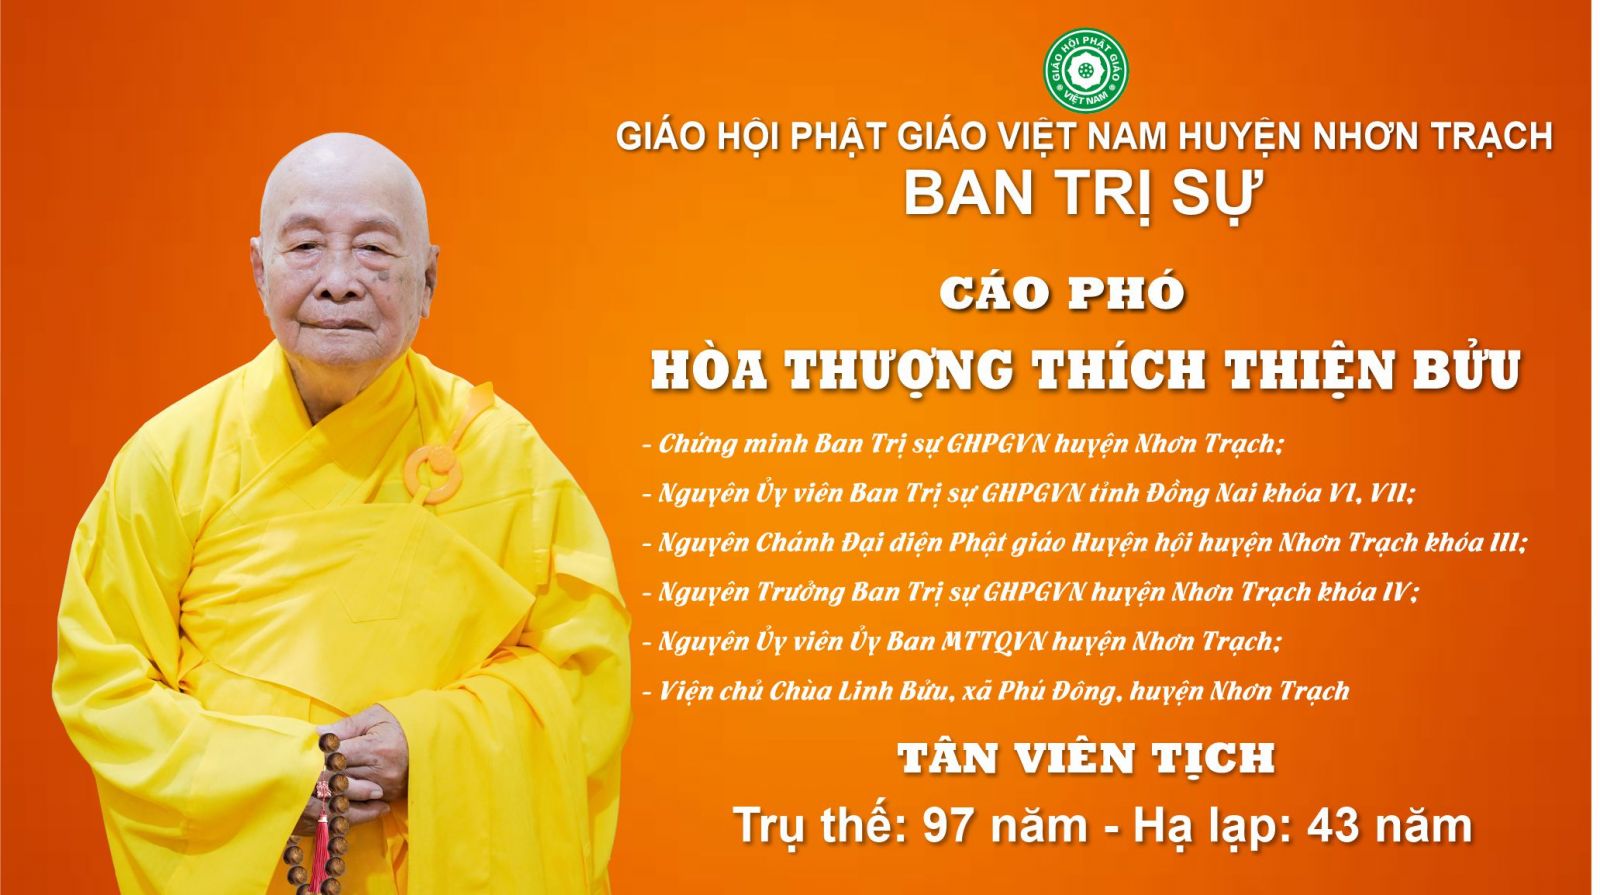 Cáo Phó: HT. Thích Thiện Bửu - Chứng minh Ban Trị sự GHPGVN huyện Nhơn Trạch - Tân Viên Tịch.